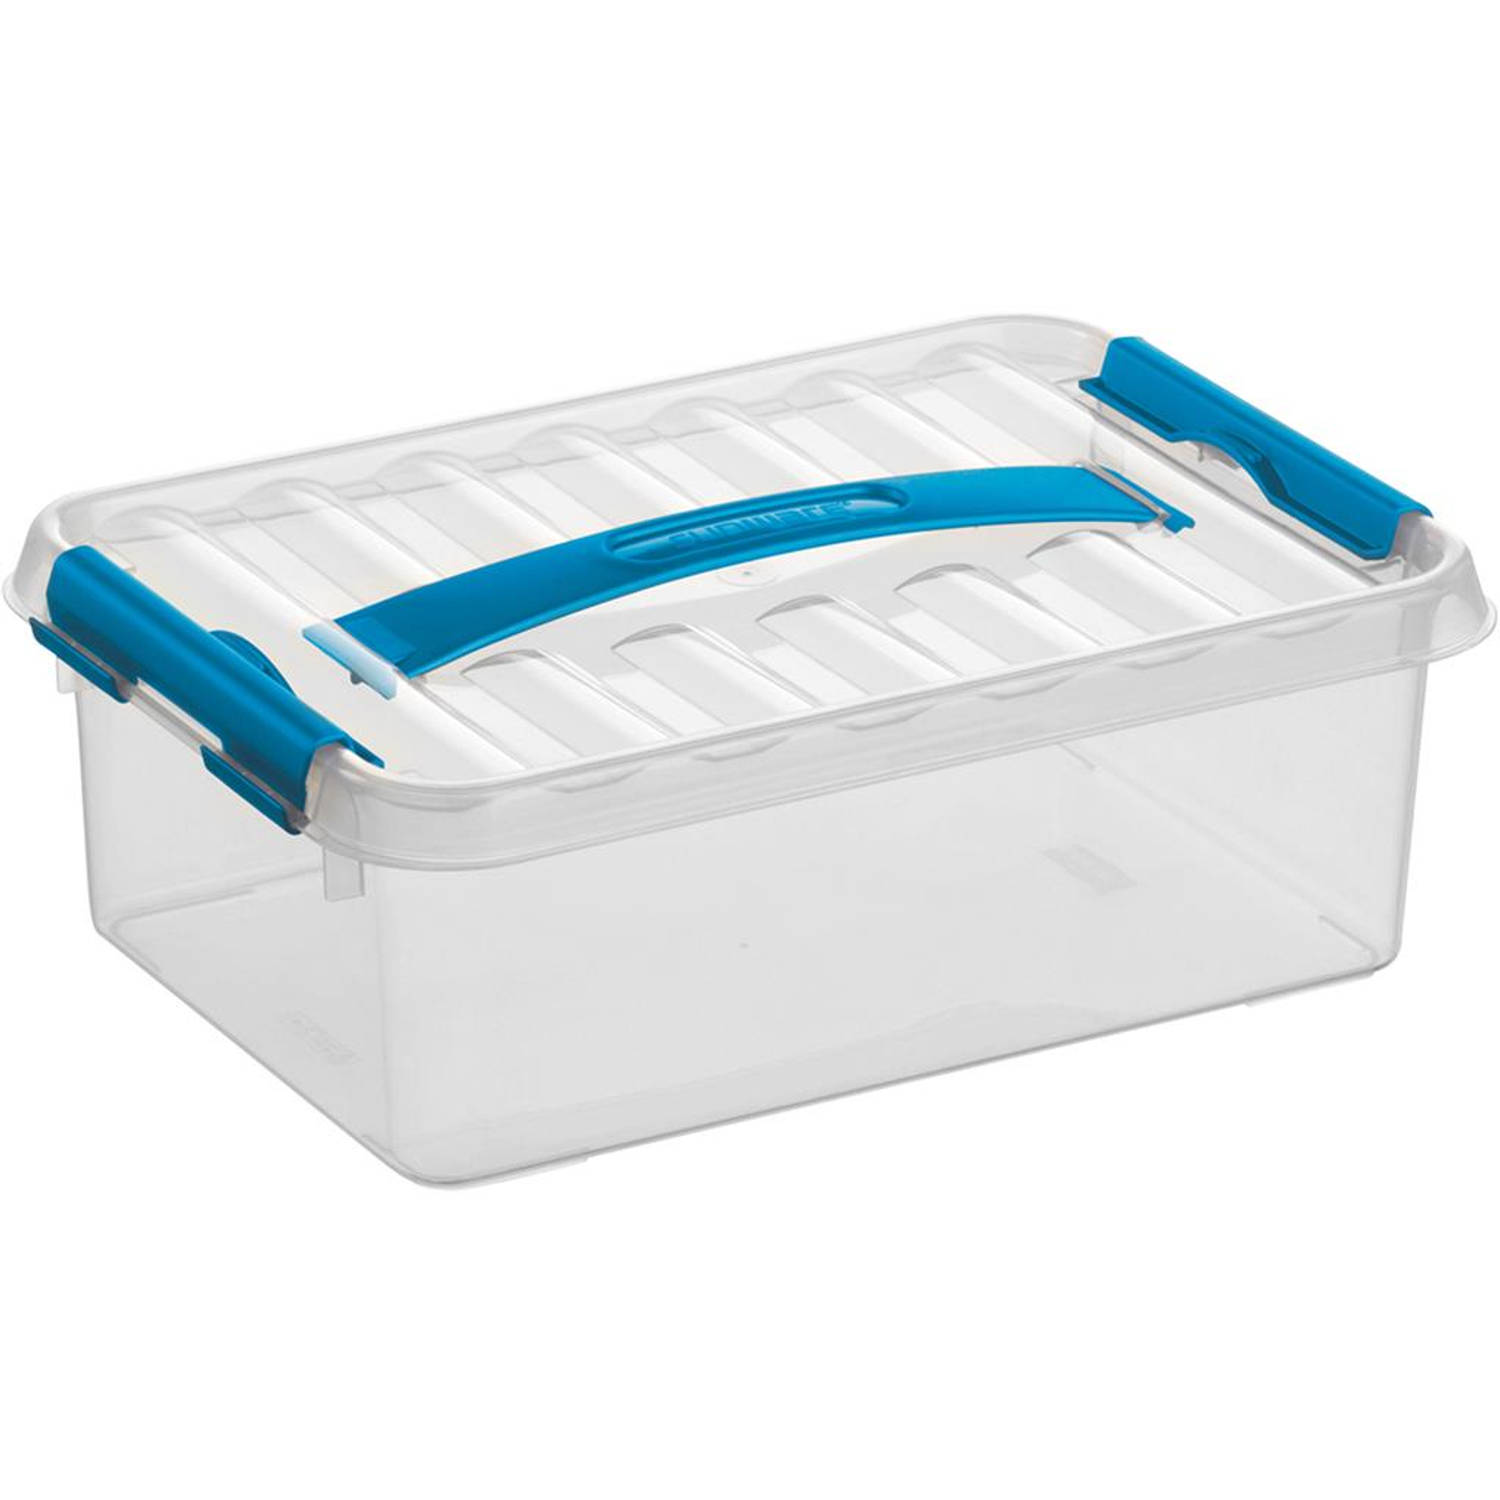 Sunware - Q-line opbergbox 4L transparant blauw - 30 x 20 x 10,4 cm